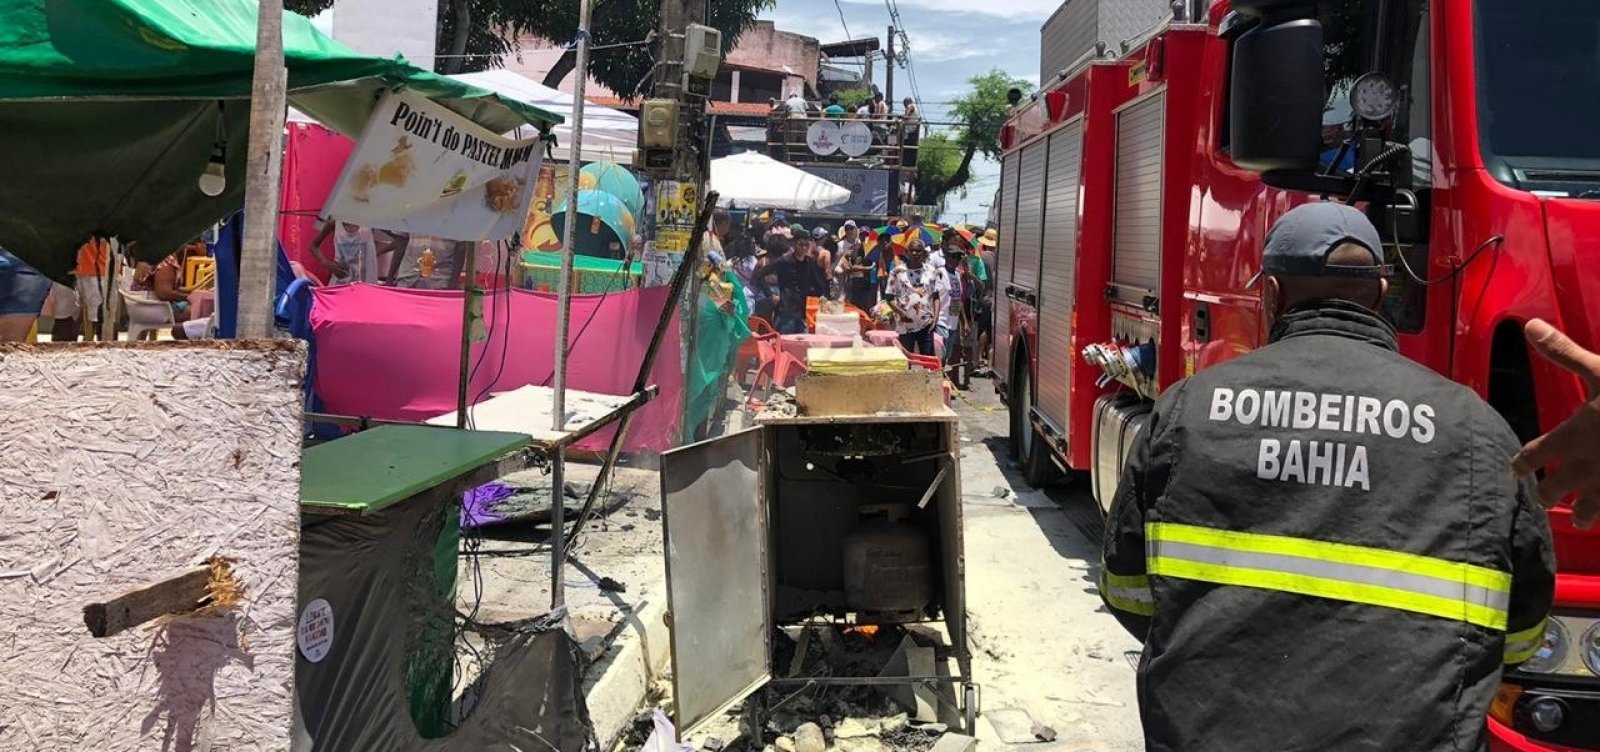 Ministério Público pede laudo pericial de incêndio em carrinho na Mudança do Garcia